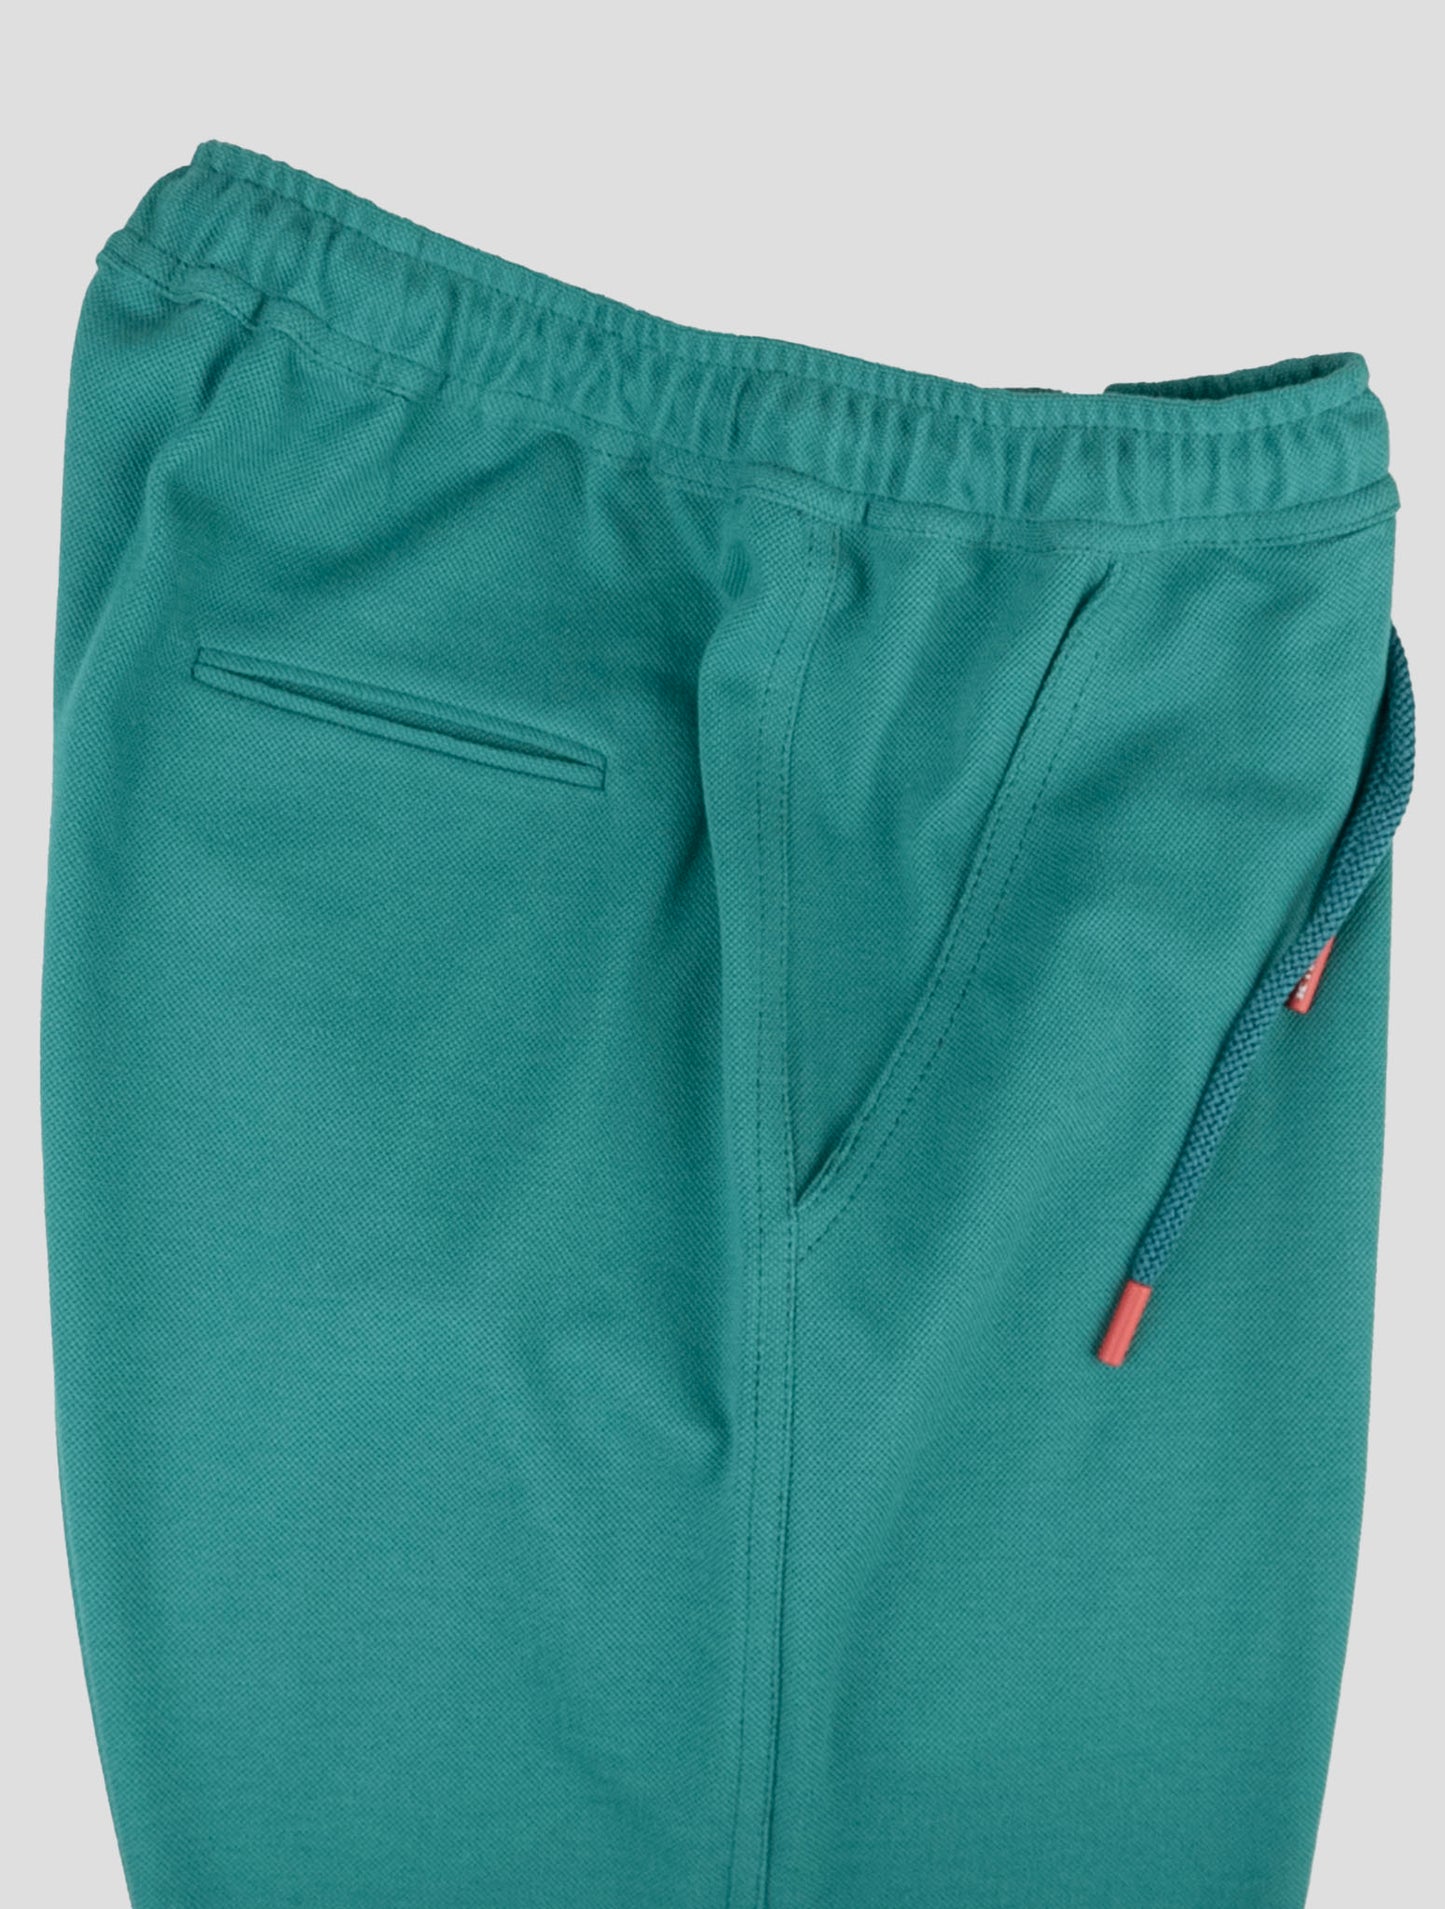 Traje a juego Kiton-Azul Mariano y verde pantalones cortos chándal